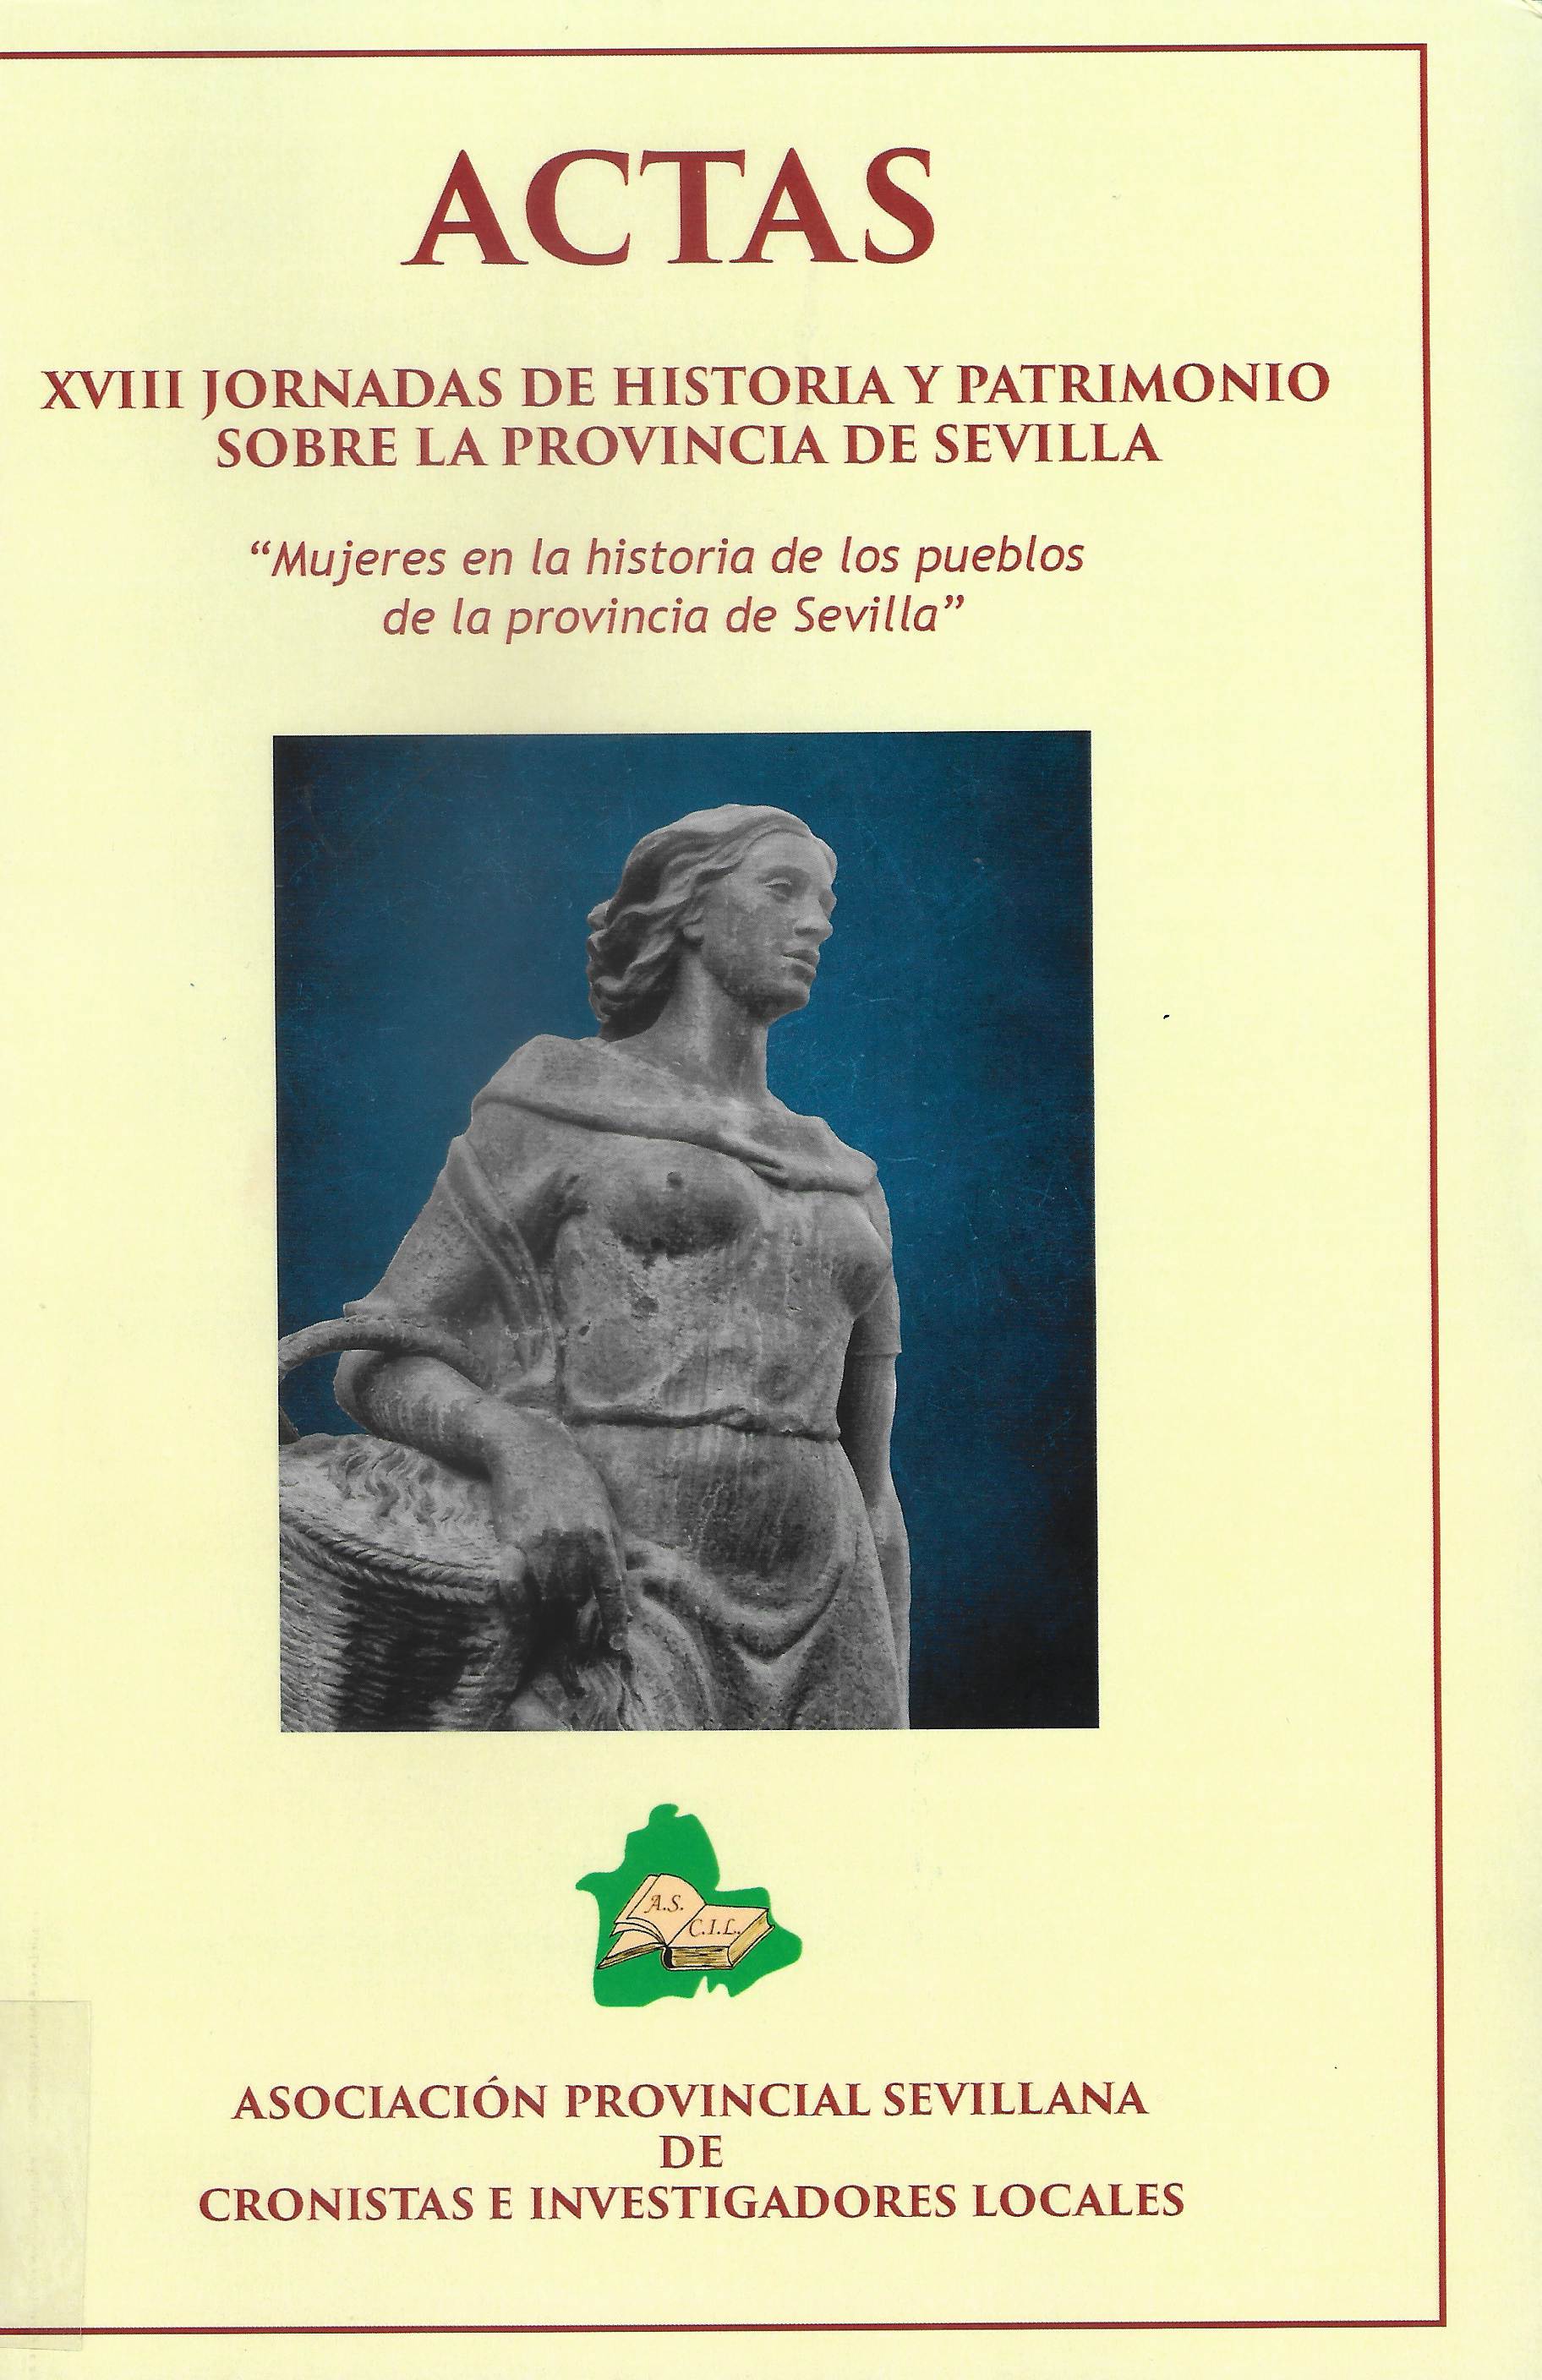 Imagen de portada del libro Mujeres en la historia de los pueblos de la provincia de Sevilla